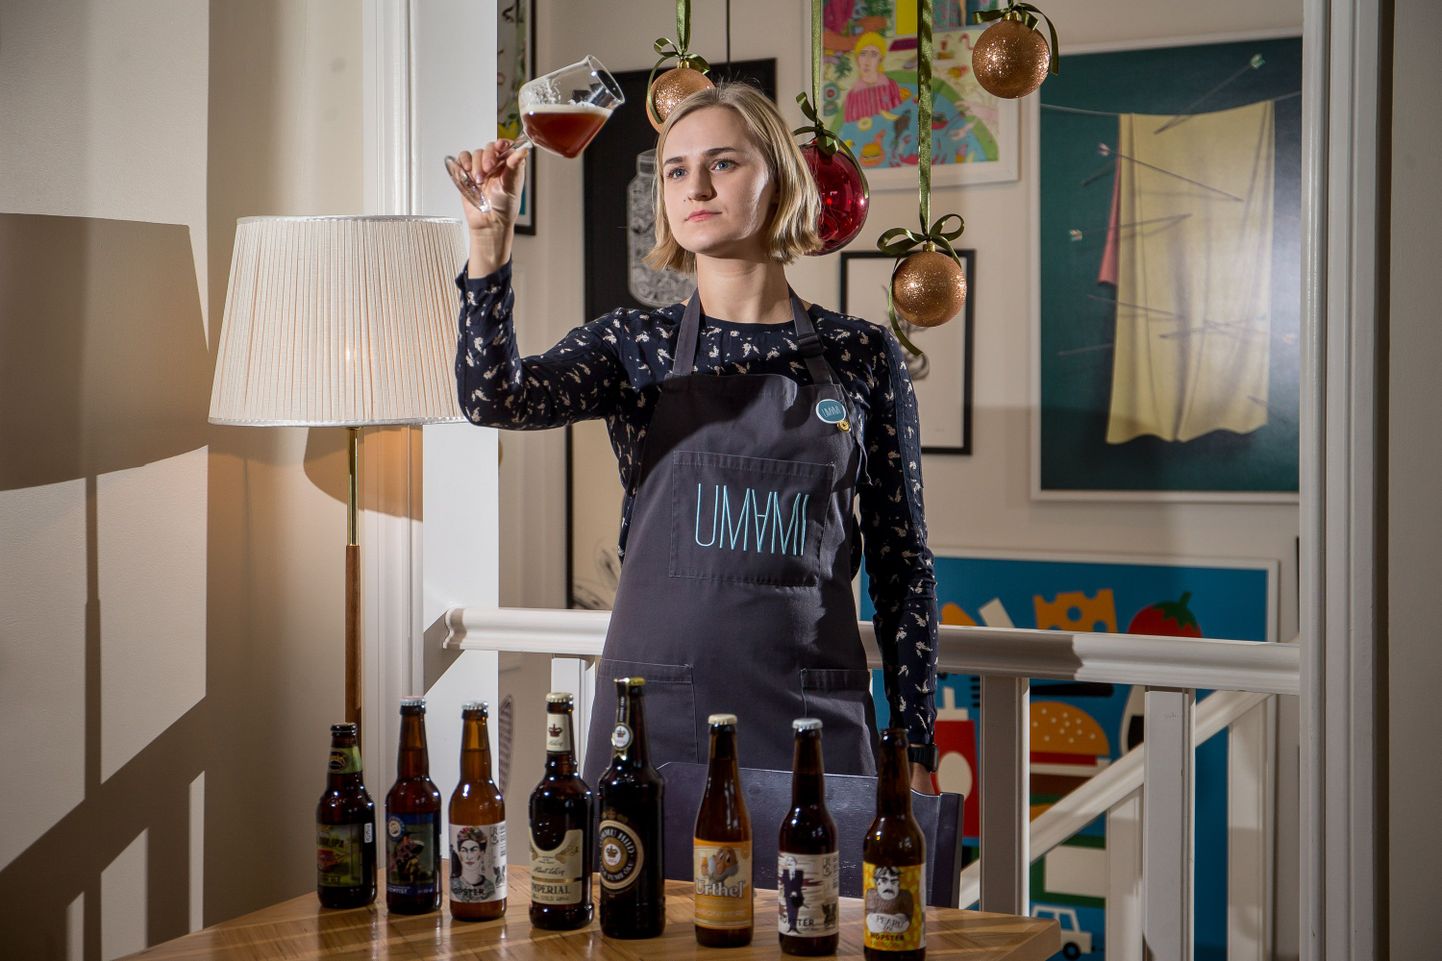 Kõrge jala, laia suu ja põhjaga klaasis avab õlu end kogu ilus, ütleb Eesti parim õllesommeljee Els-Maria Uibo oma praeguses töökohas, restoranis Umami õlle värvust uurides.